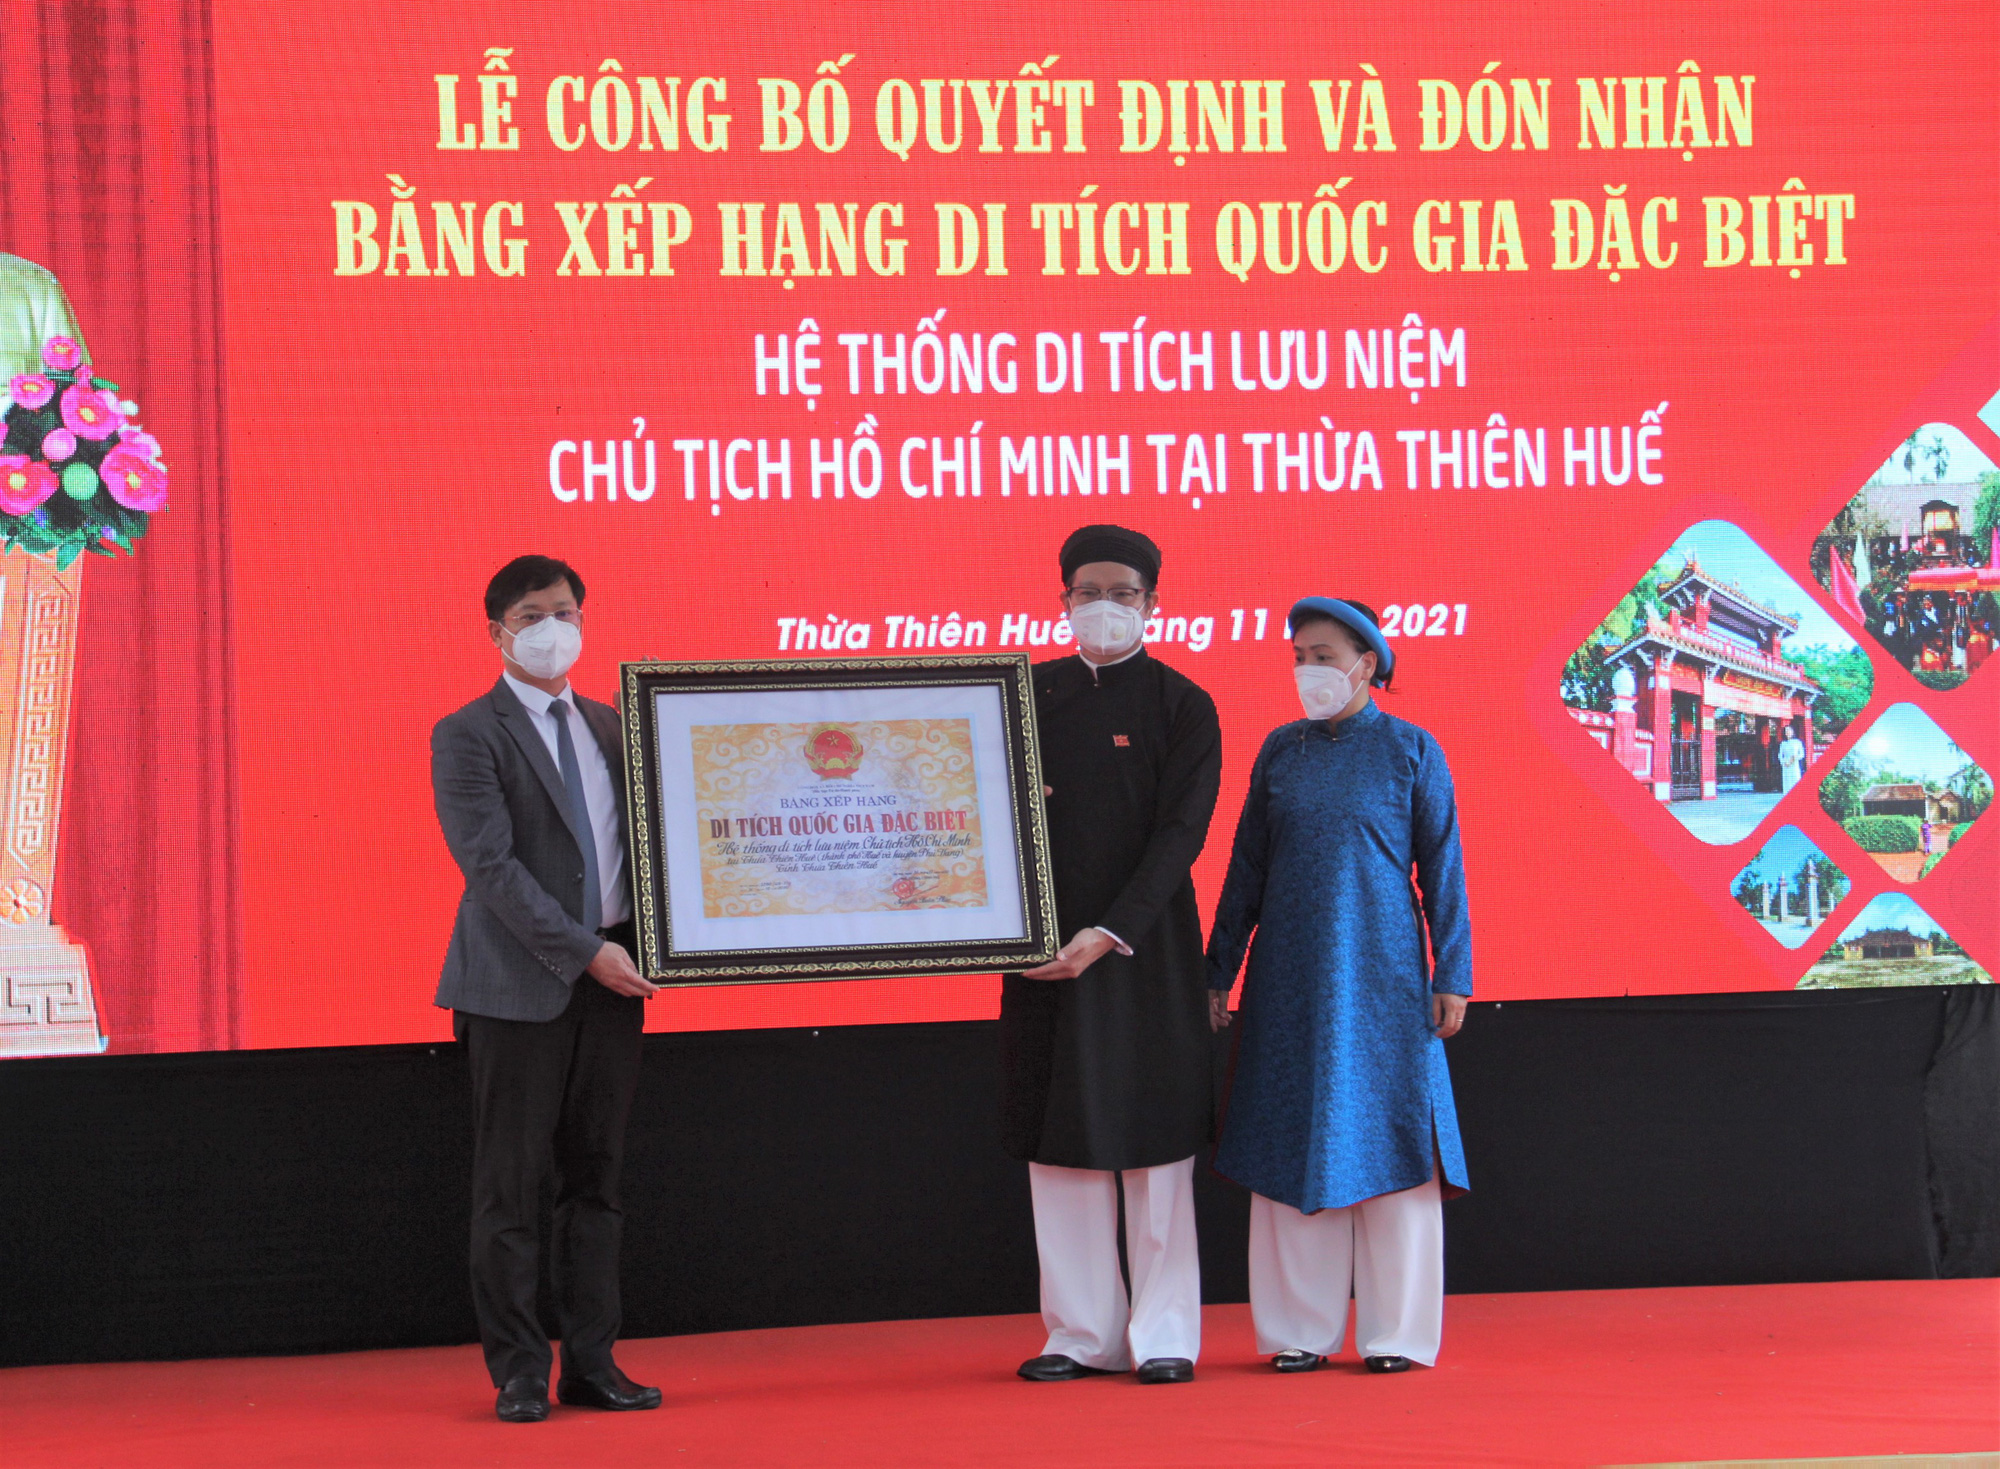 Đón nhận Bằng xếp hạng di tích Quốc gia đặc biệt Hệ thống di tích lưu niệm Chủ tịch Hồ Chí Minh tại Thừa Thiên Huế - Ảnh 3.